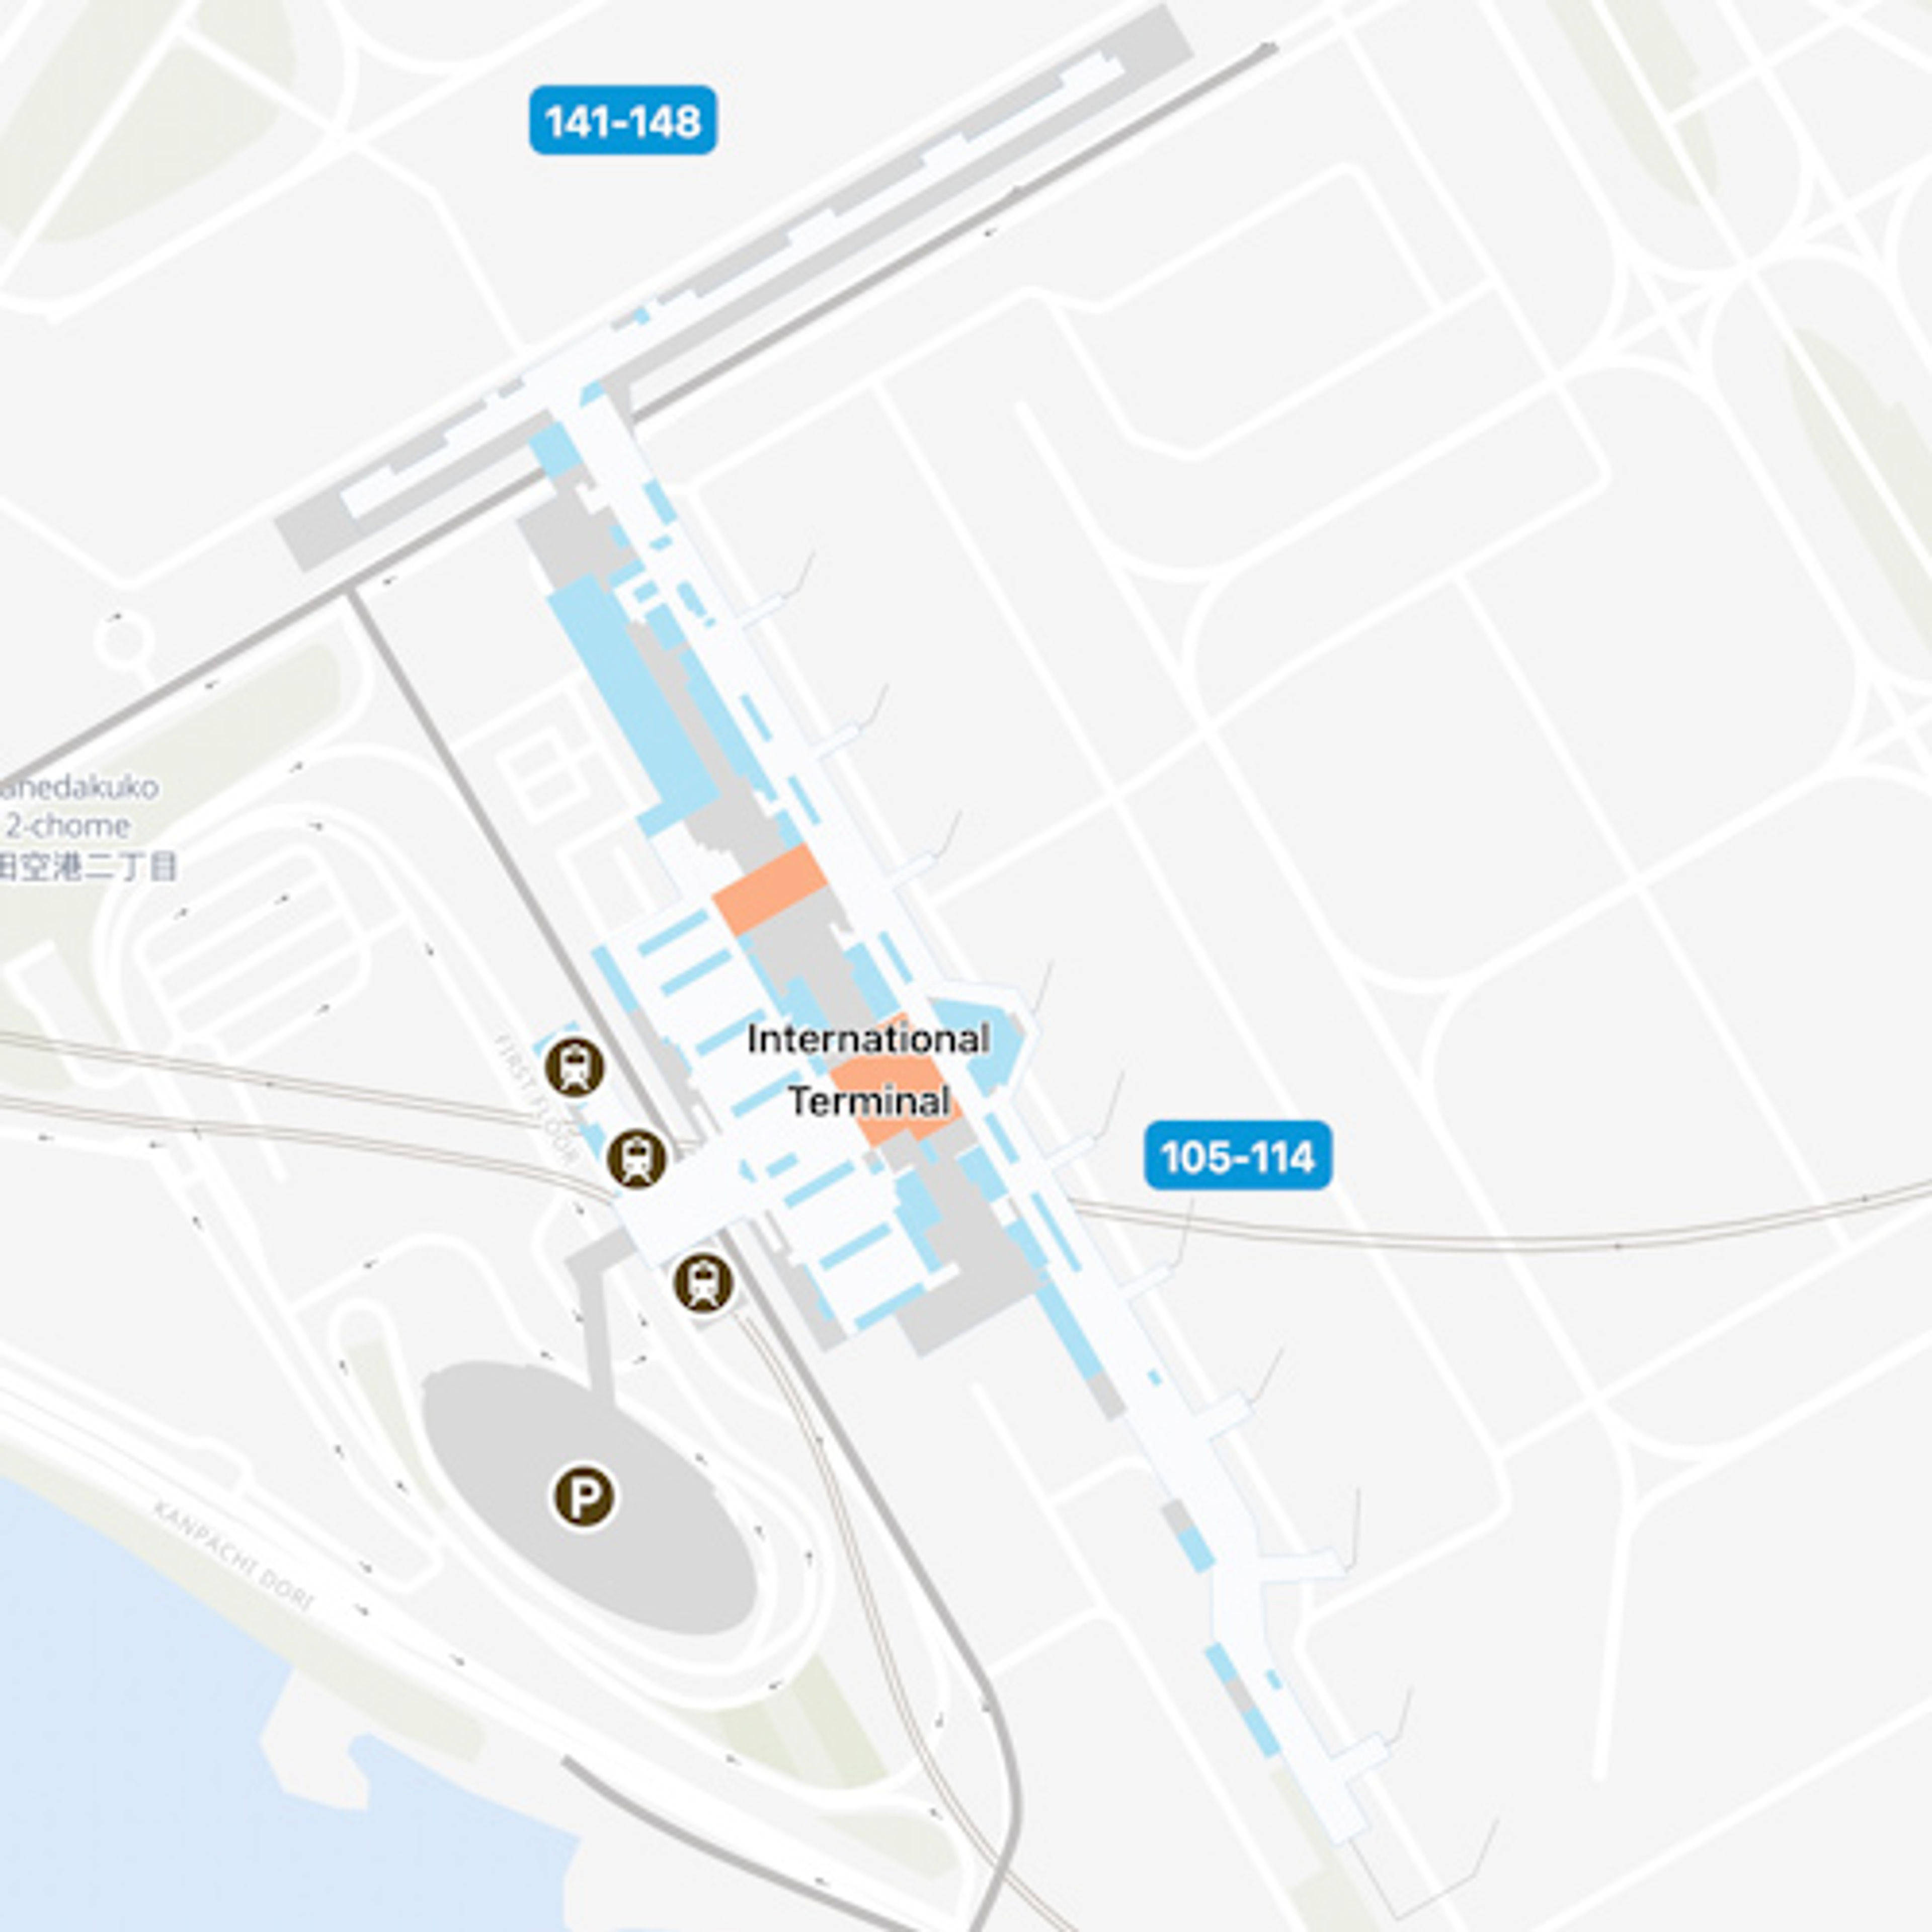 Ota, Tokyo Airport Intl Terminal Map